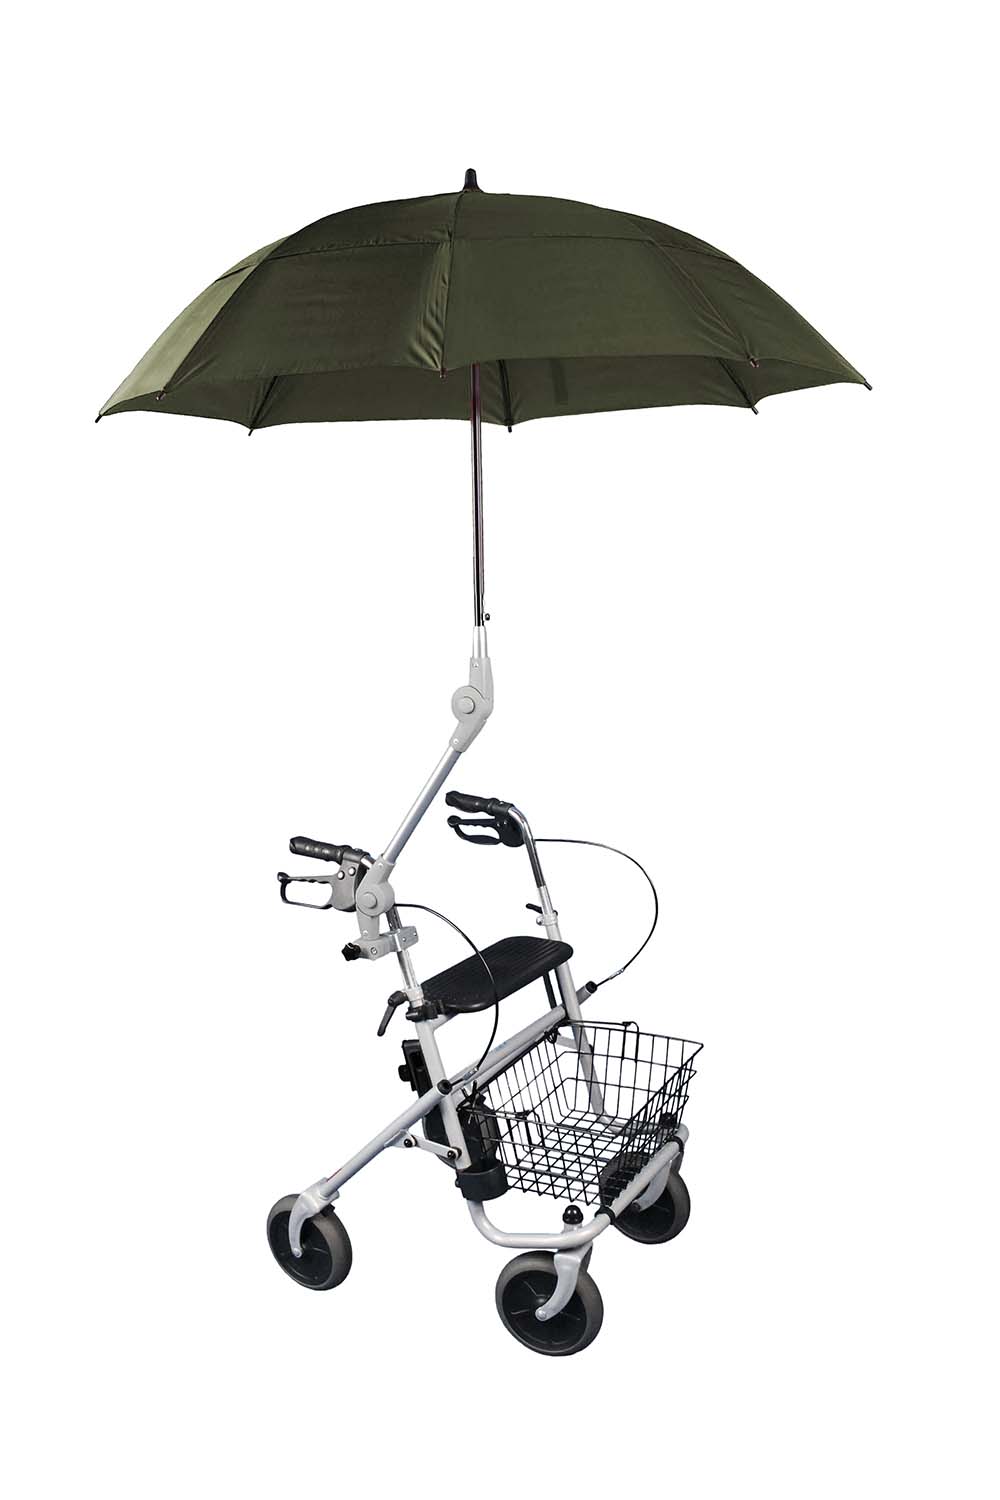 Regenschutz mit Ärmel und Beinschutz zu Scooter/Rollstuhl blau (marine) mit  Kapuze und Arm, Rollstuhl Zubehör - RS Hilfsmittel GmbH